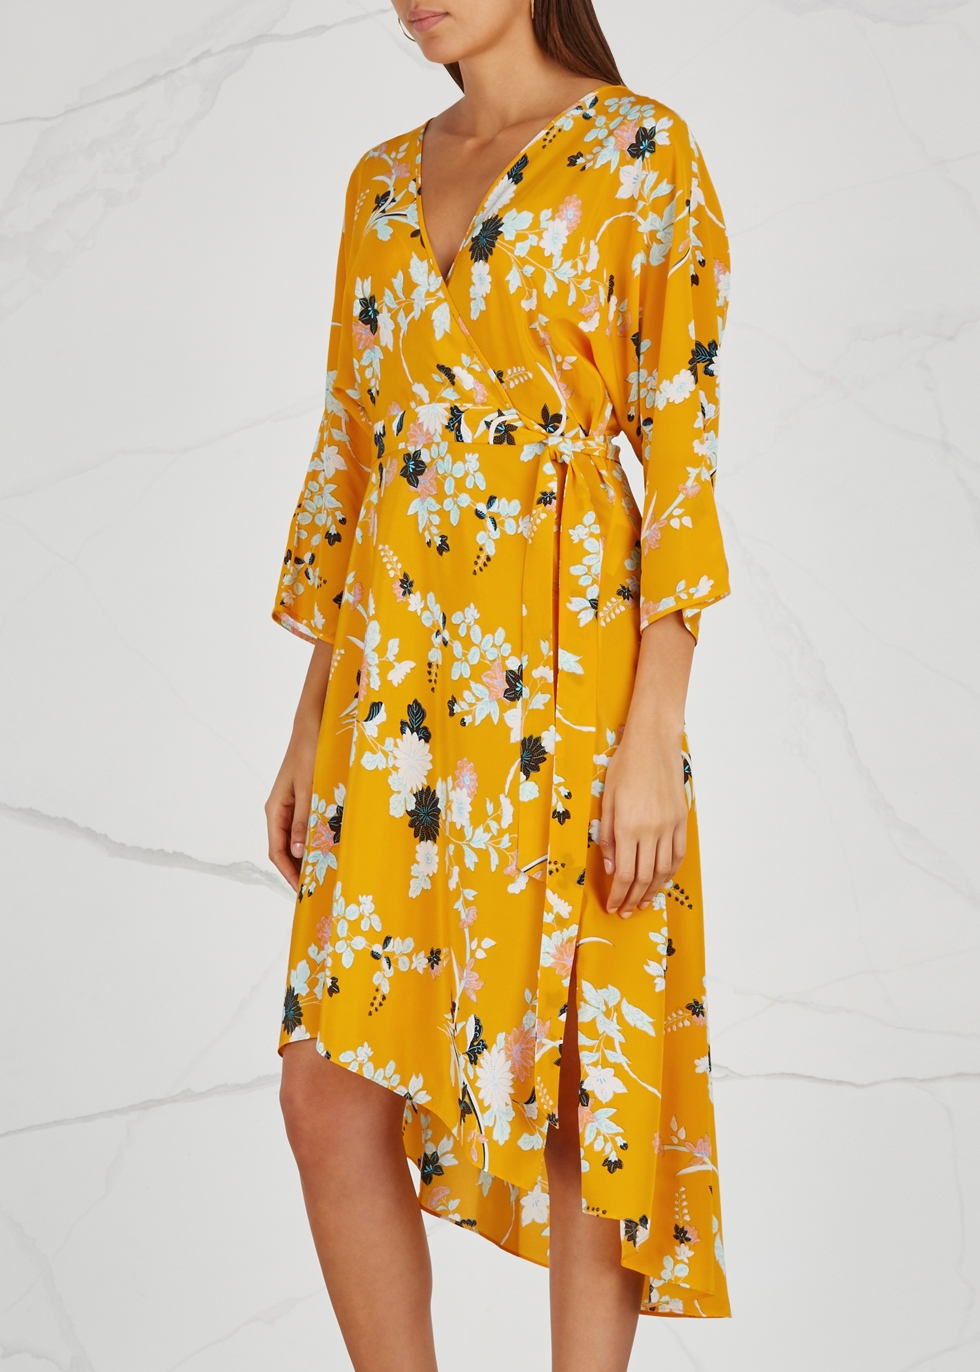 Eloise floral-print silk dress - Diane von Furstenberg